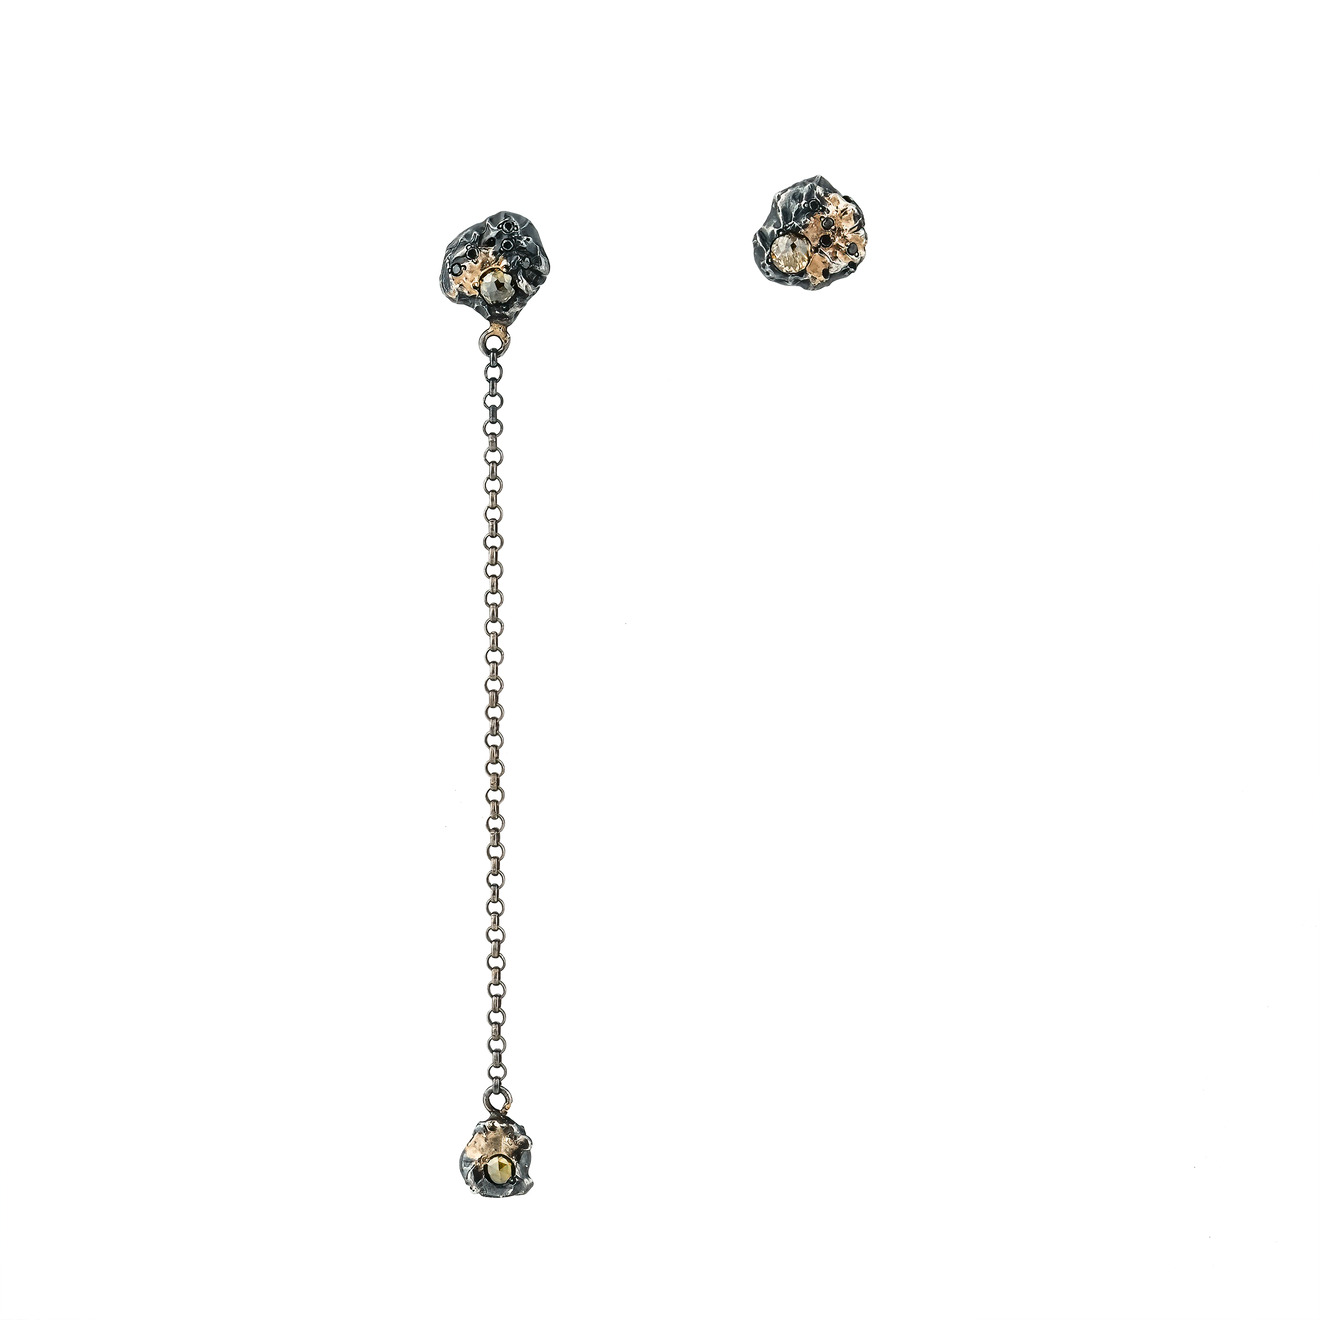 Kintsugi Jewelry Асимметричные серьги Rough diamond из серебра с позолотой и вставками из бриллиантов liya серьги с позолотой и вставками из перламутра и морской раковины